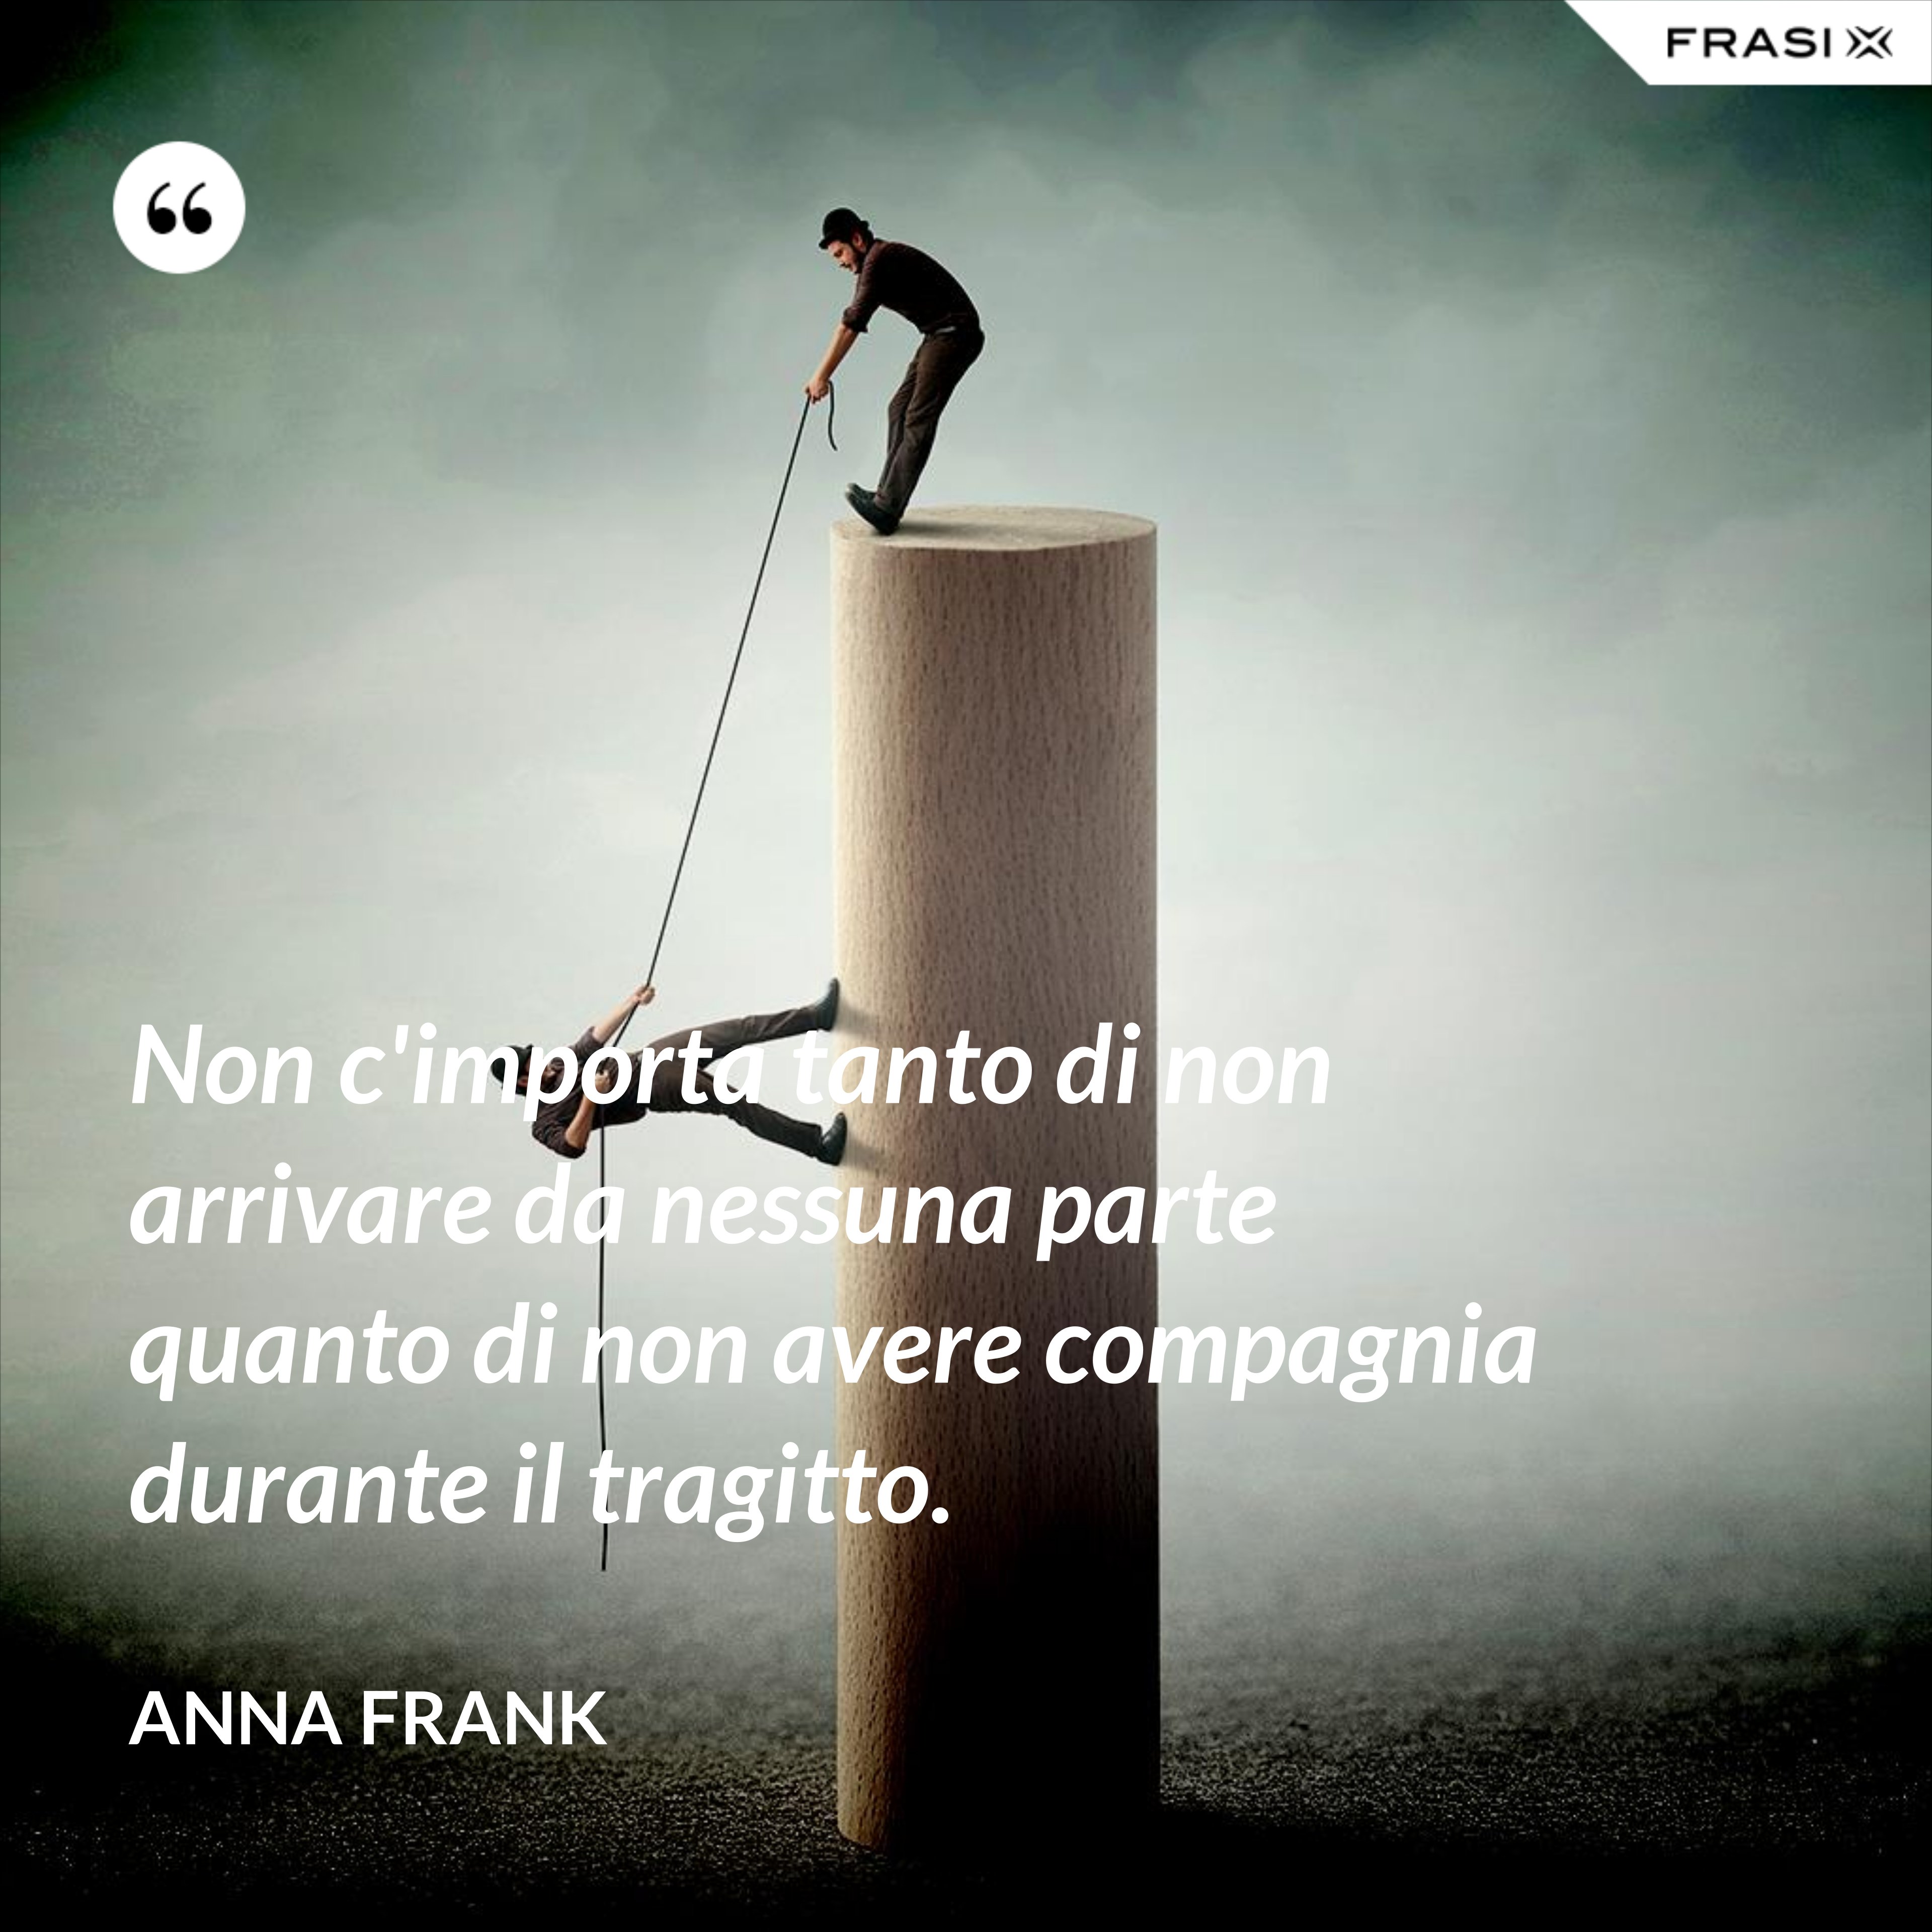 Non c'importa tanto di non arrivare da nessuna parte quanto di non avere compagnia durante il tragitto. - Anna Frank